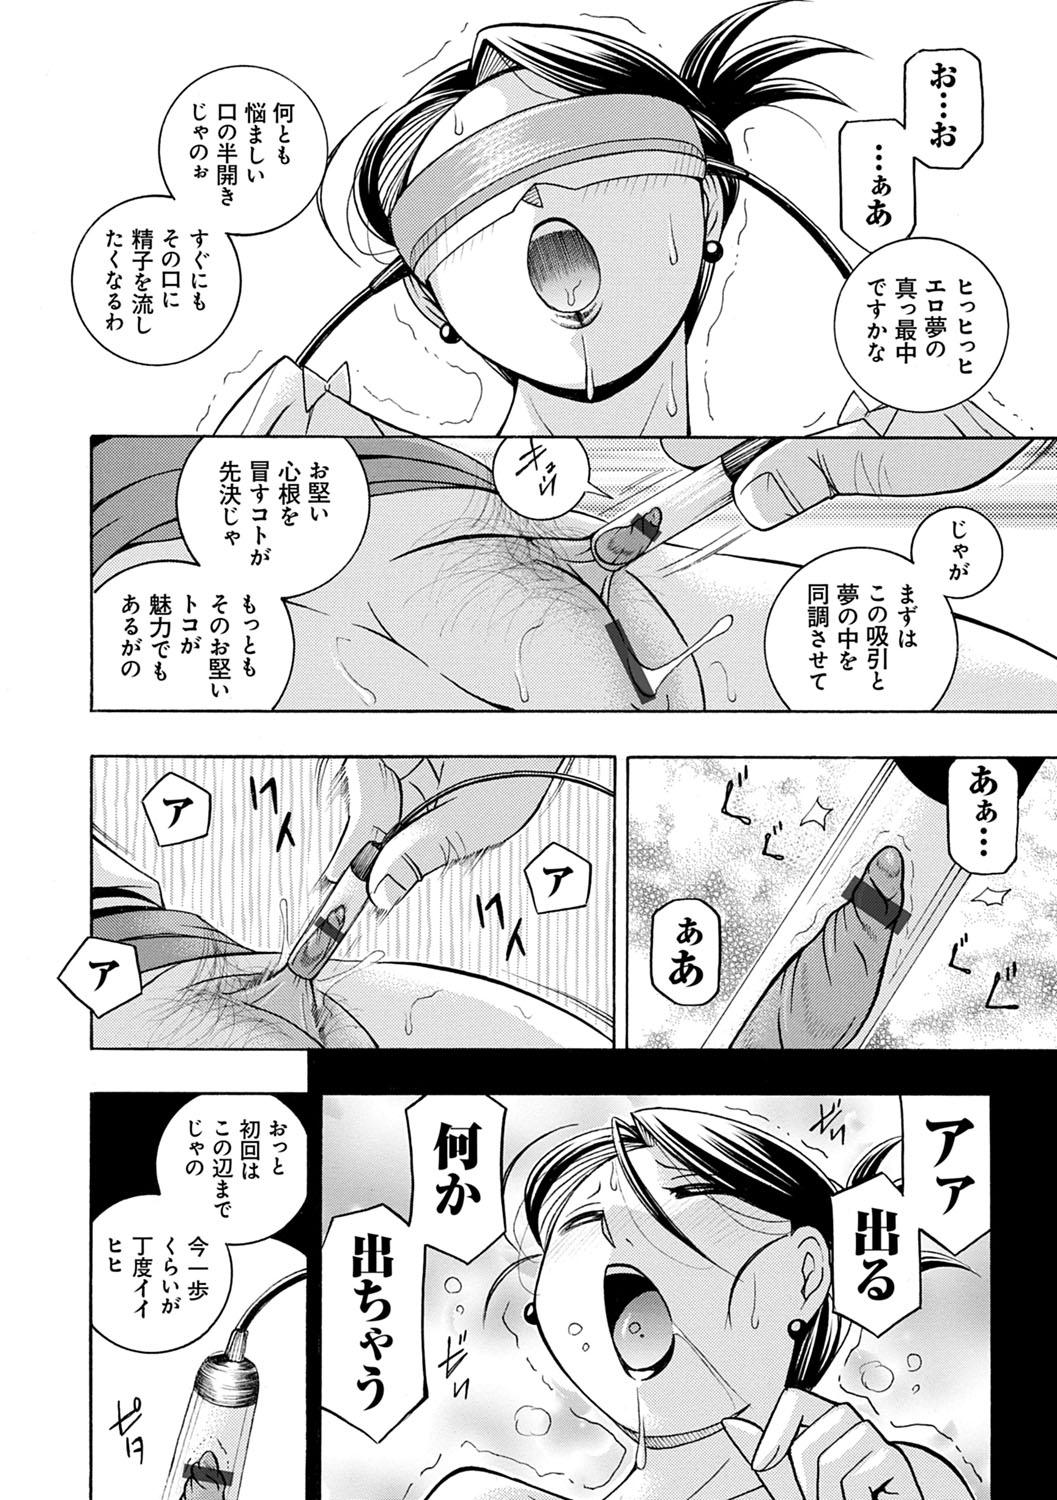 [Chuuka Naruto] Bijin Shachou Yuki ~Mitsuyaku no Nikusettai~ - YUKI of The Beautiful Chief Executive Officer ~The secret sweet treaty by sexual reception~ [Digital] 22